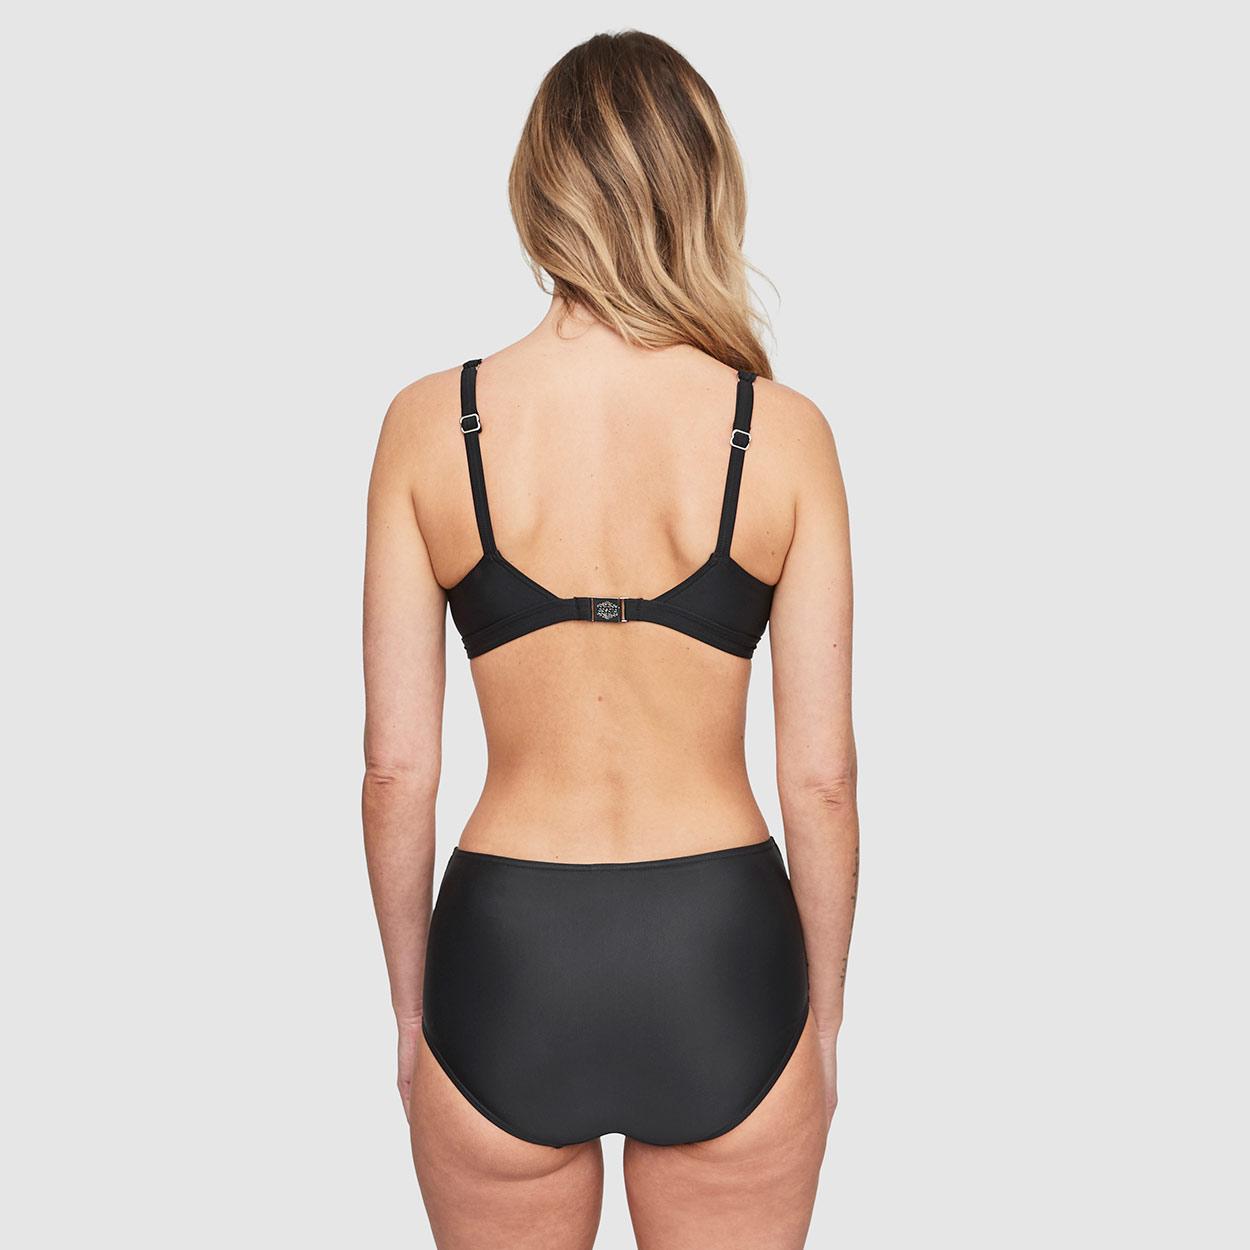 Abecitas Bikini-Oberteil ohne Bügel Modell Capri Delight in Farbe schwarz am Modell im Set in der Rückansicht